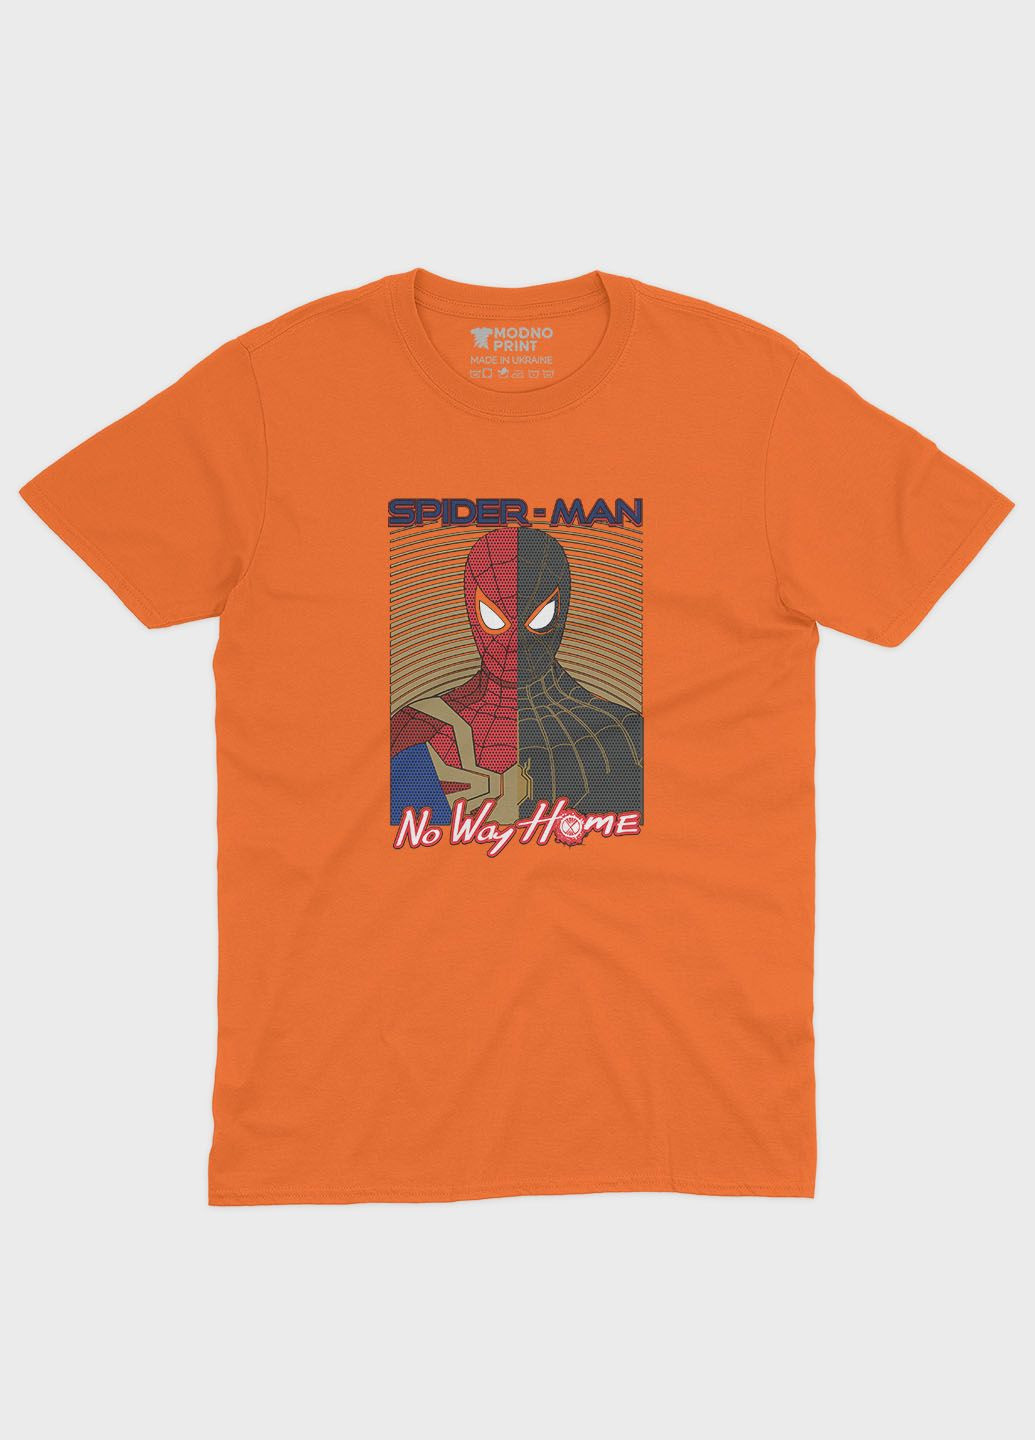 Оранжевая демисезонная футболка для мальчика с принтом супергероя - человек-паук (ts001-1-ora-006-014-009-b) Modno